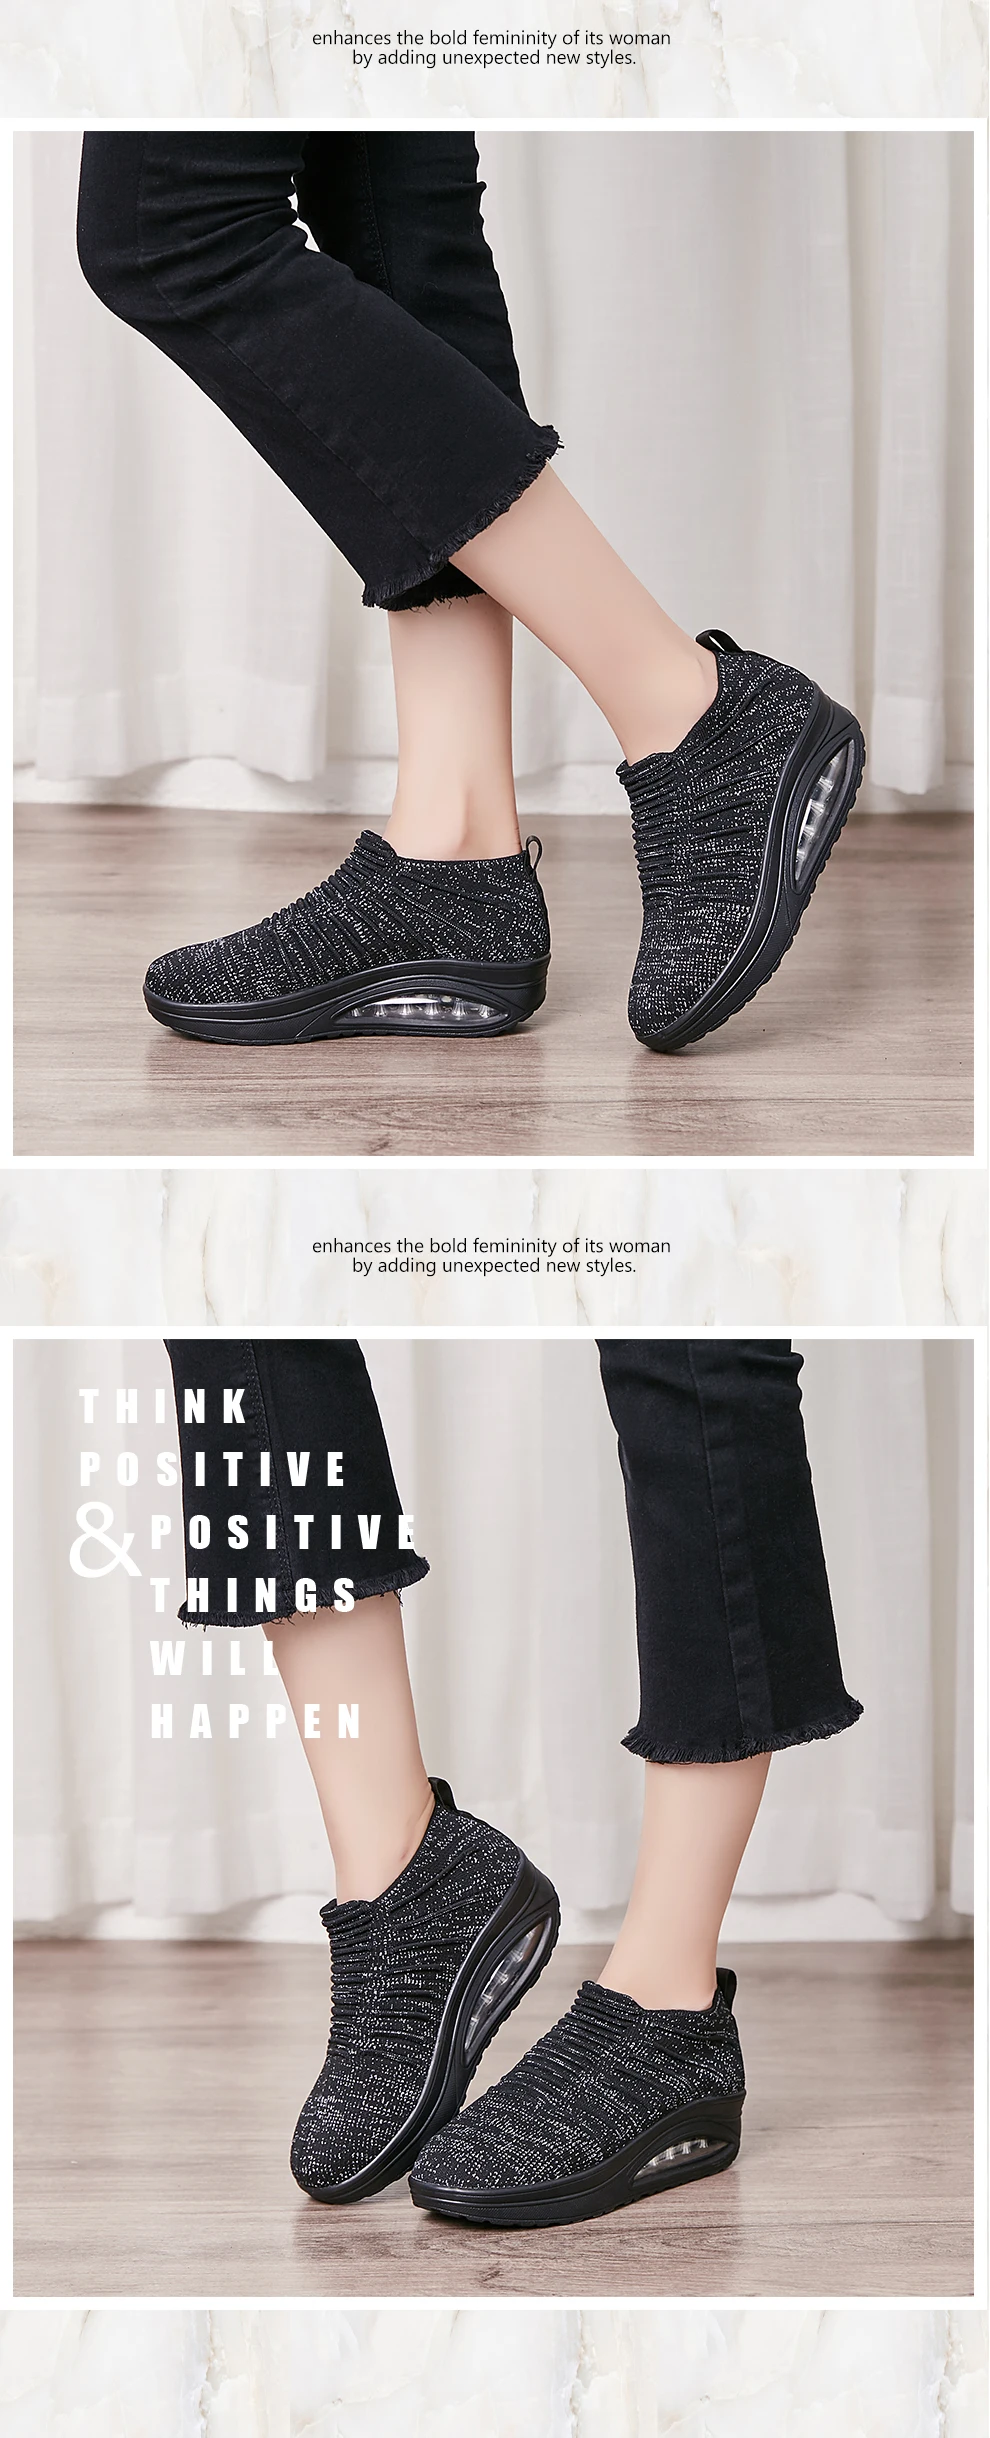 Minika/Женская обувь для похудения; дышащие кроссовки без шнуровки; Новинка года; обувь на танкетке, визуально увеличивающая рост; женская обувь для танцев